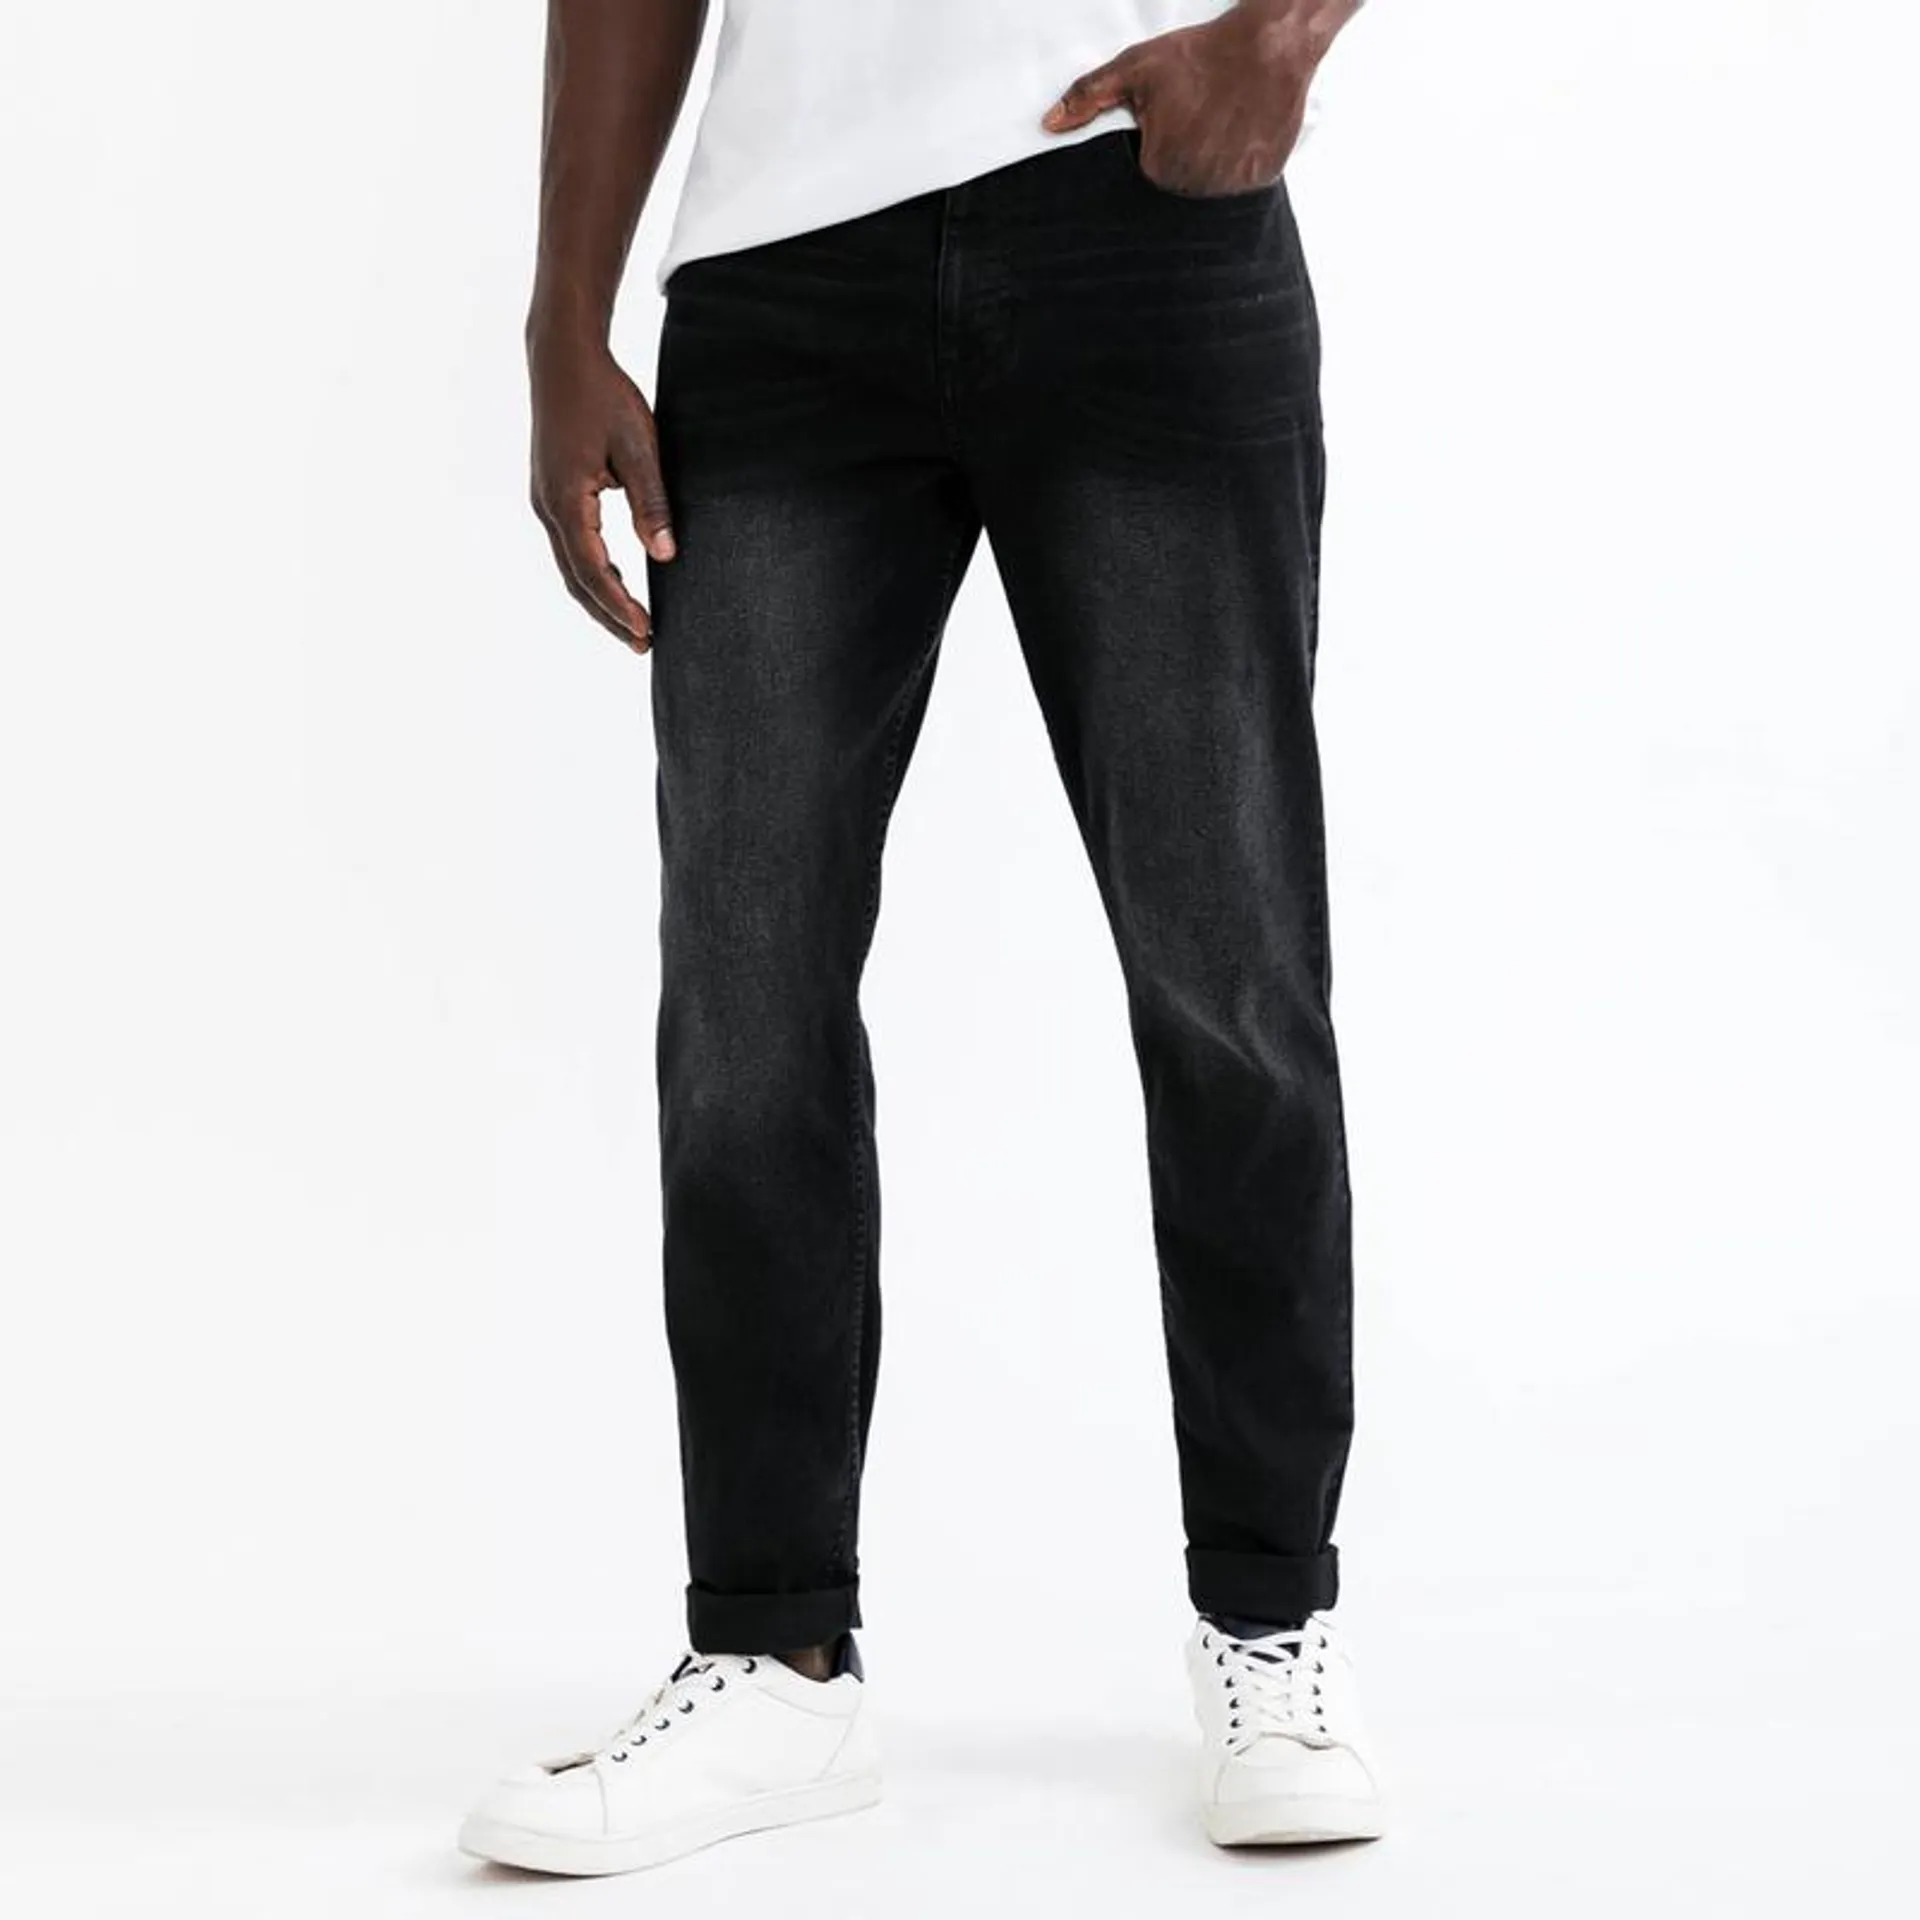 Men's Black Straight Leg Jeans